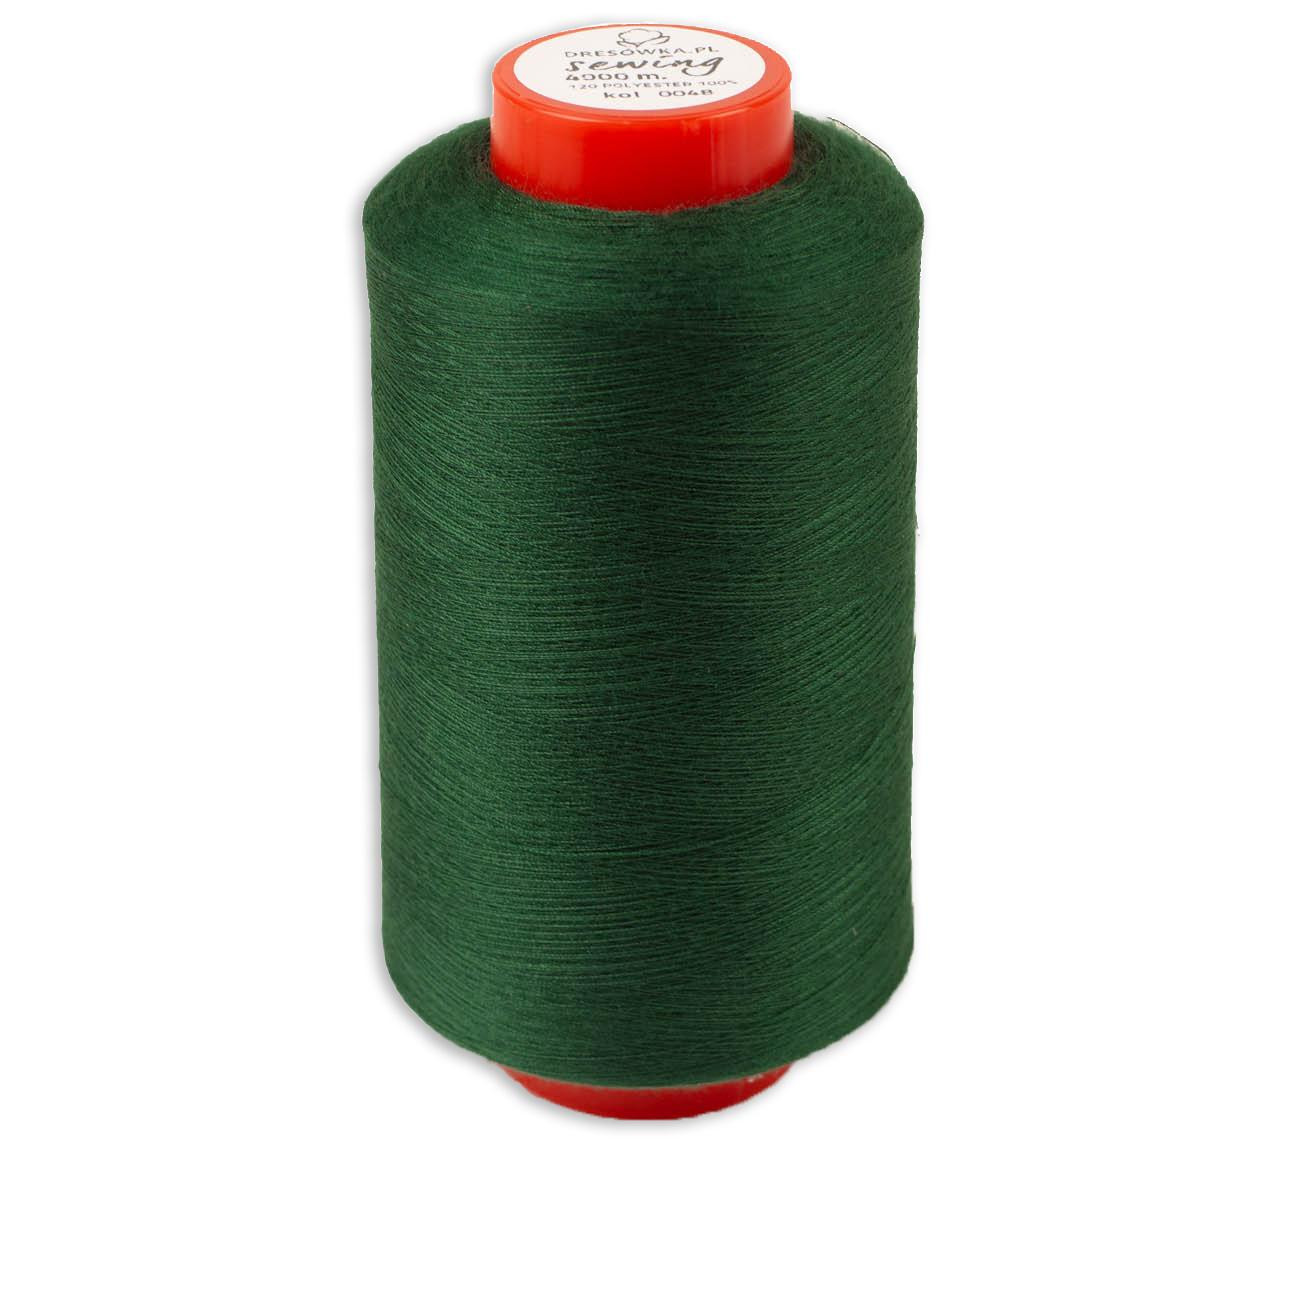 Threads 4000m overlock - bottled green